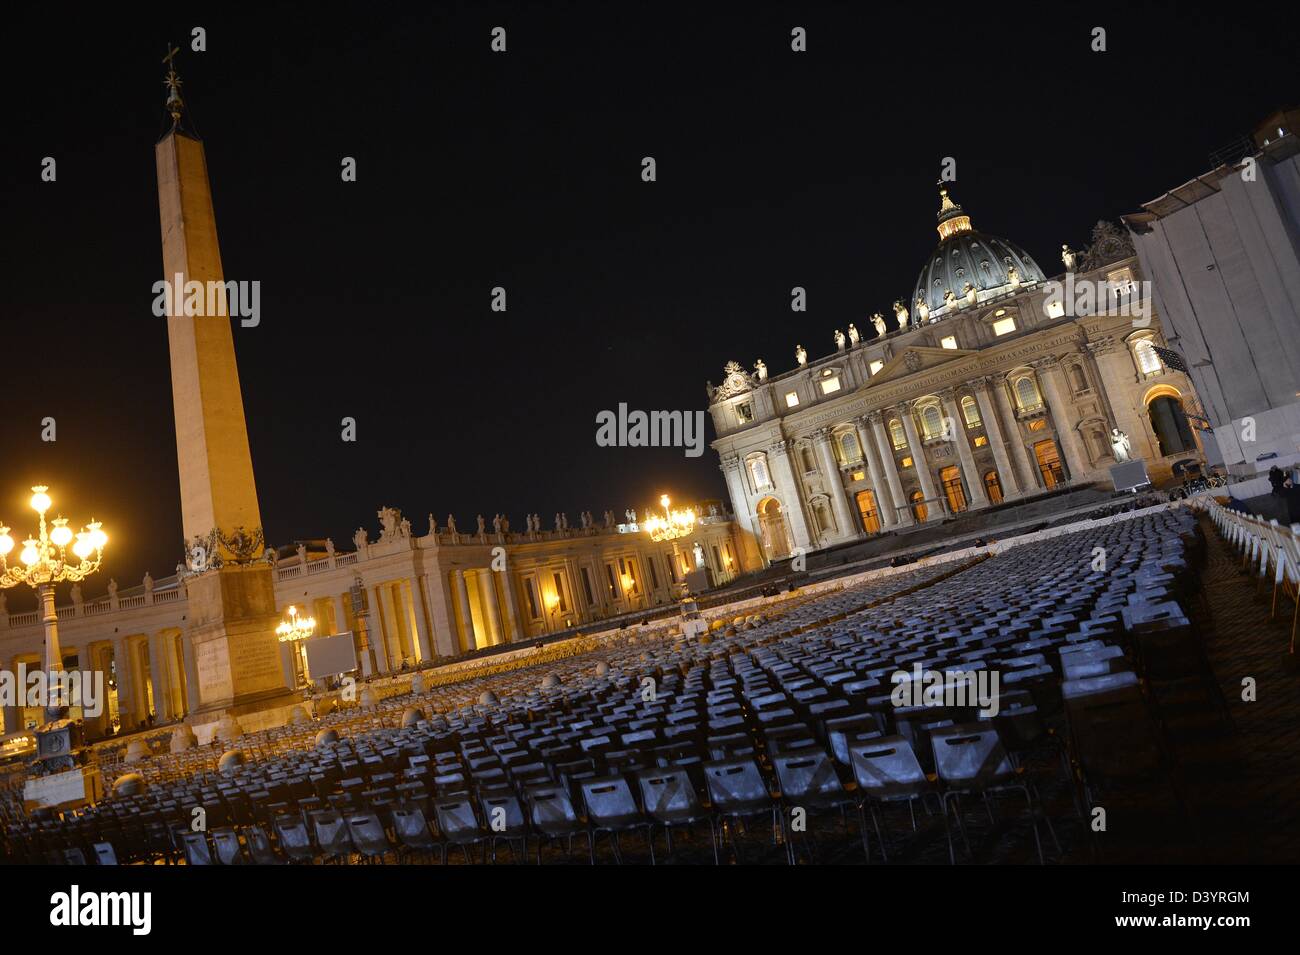 Der Petersplatz ist am Abend in Rom, Italien, 26. Februar 2013 hell. Vorbereitungen sind für die letzten Generalaudienz von Papst Benedict XVI am 27. Februar 2013 auf dem Petersplatz statt. Foto: Bernd Von Jutrczenka Stockfoto